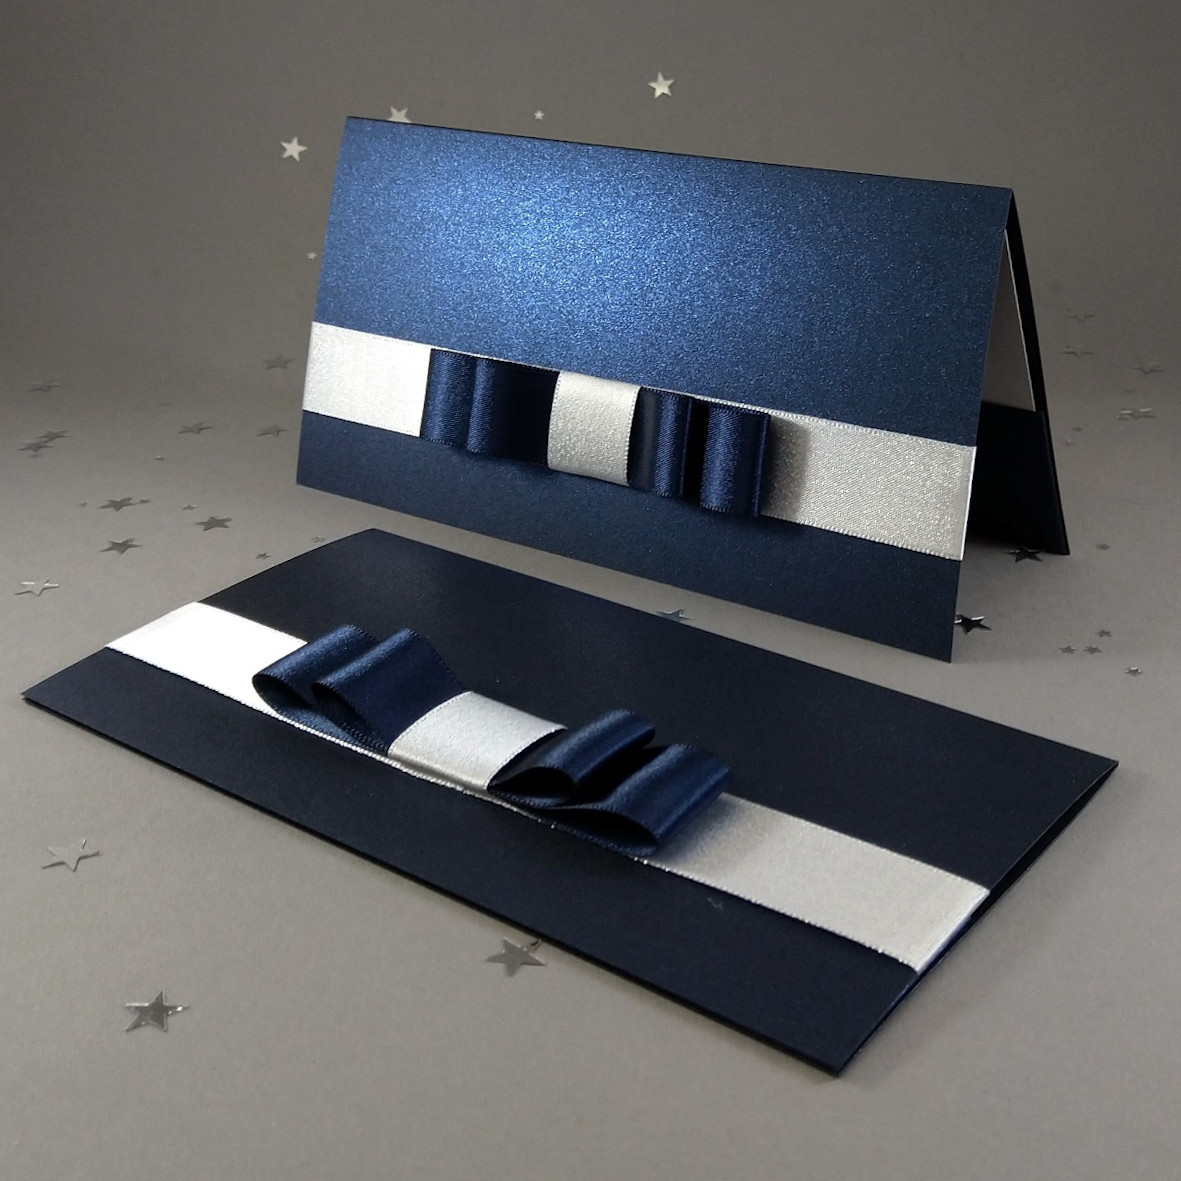 Dárková kapsa DL formátu z metalického, perleťového, tmavě modrého papíru, s aplikací z široké atlasové stuhy, celkový rozměr 206 × 106 mm.